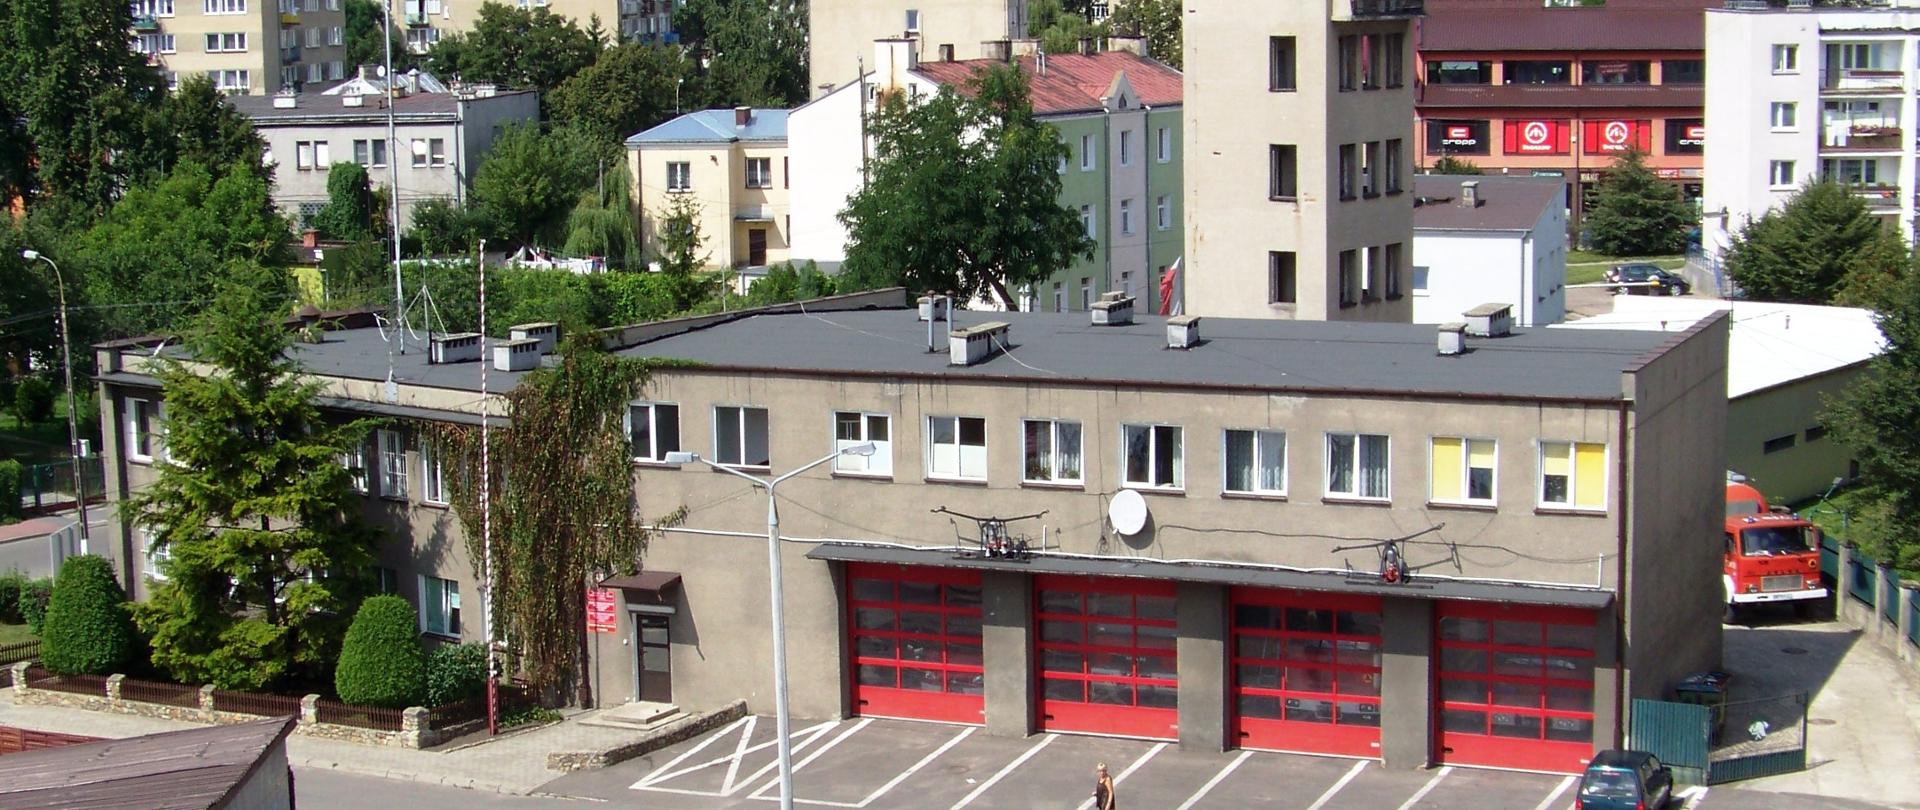 budynek, komenda Powiatowa PSP w Płońsk, ul. Rutkowskiego 16, zdjęcie wykonano z podnośnika latem 2010 r. 